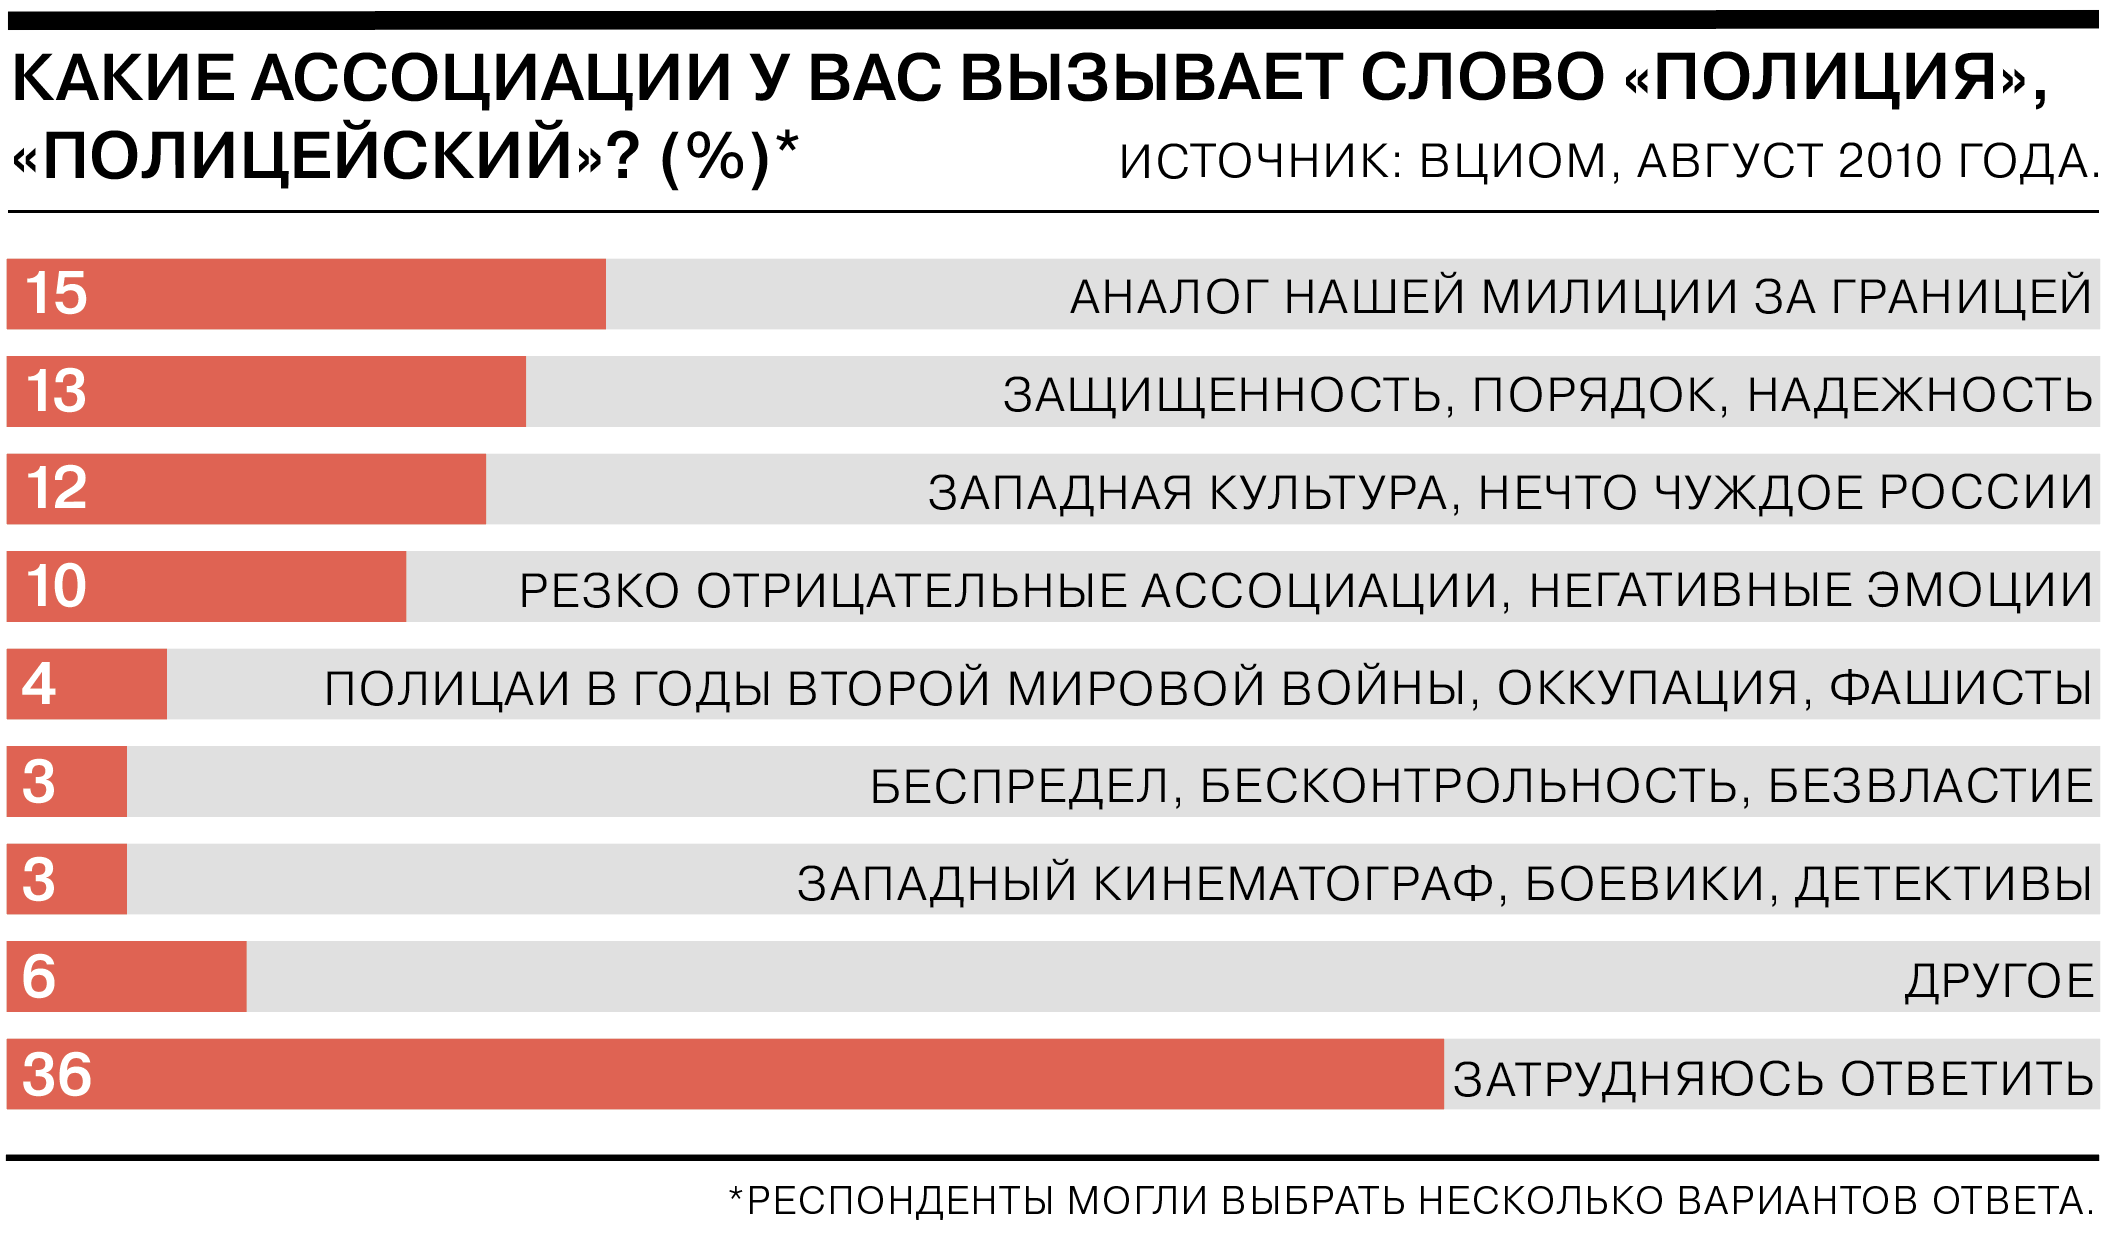 https://im.kommersant.ru/ISSUES.PHOTO/CORP/2021/02/05/2%D0%B0%D1%81%D1%81%D0%BE%D1%86%D0%B8%D0%B0%D1%86%D0%B8%D0%B8.png